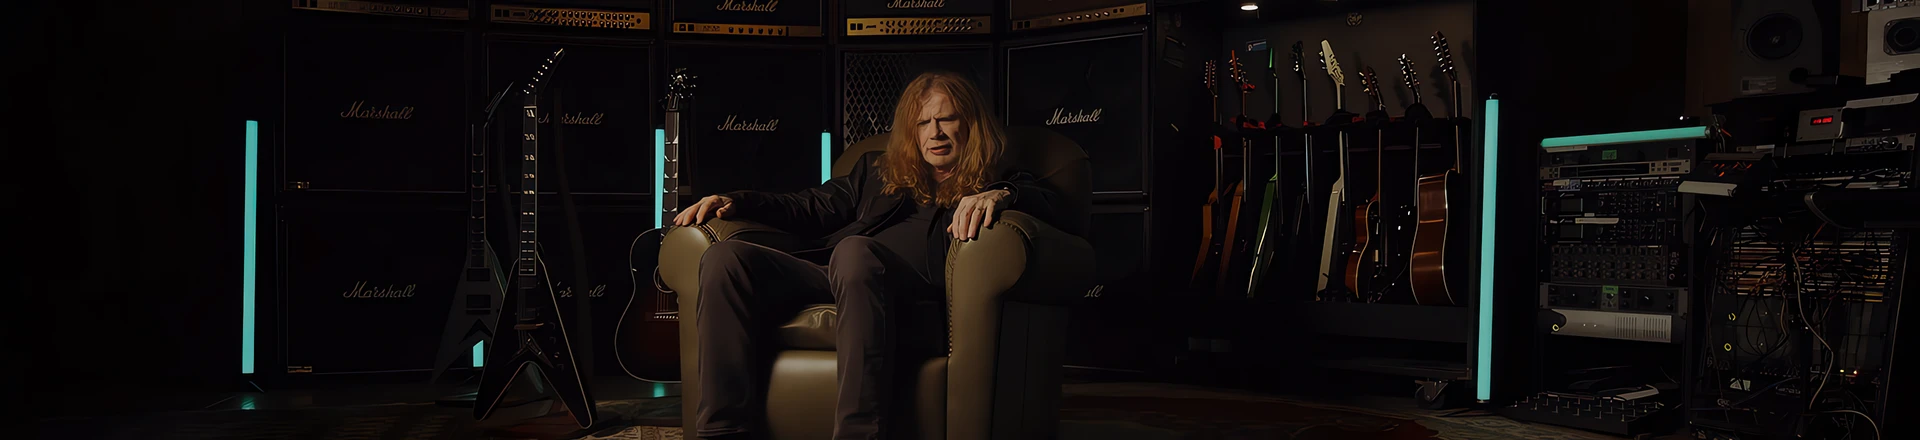 Limitowane perełki od Gibsona i Dave'a Mustaine'a